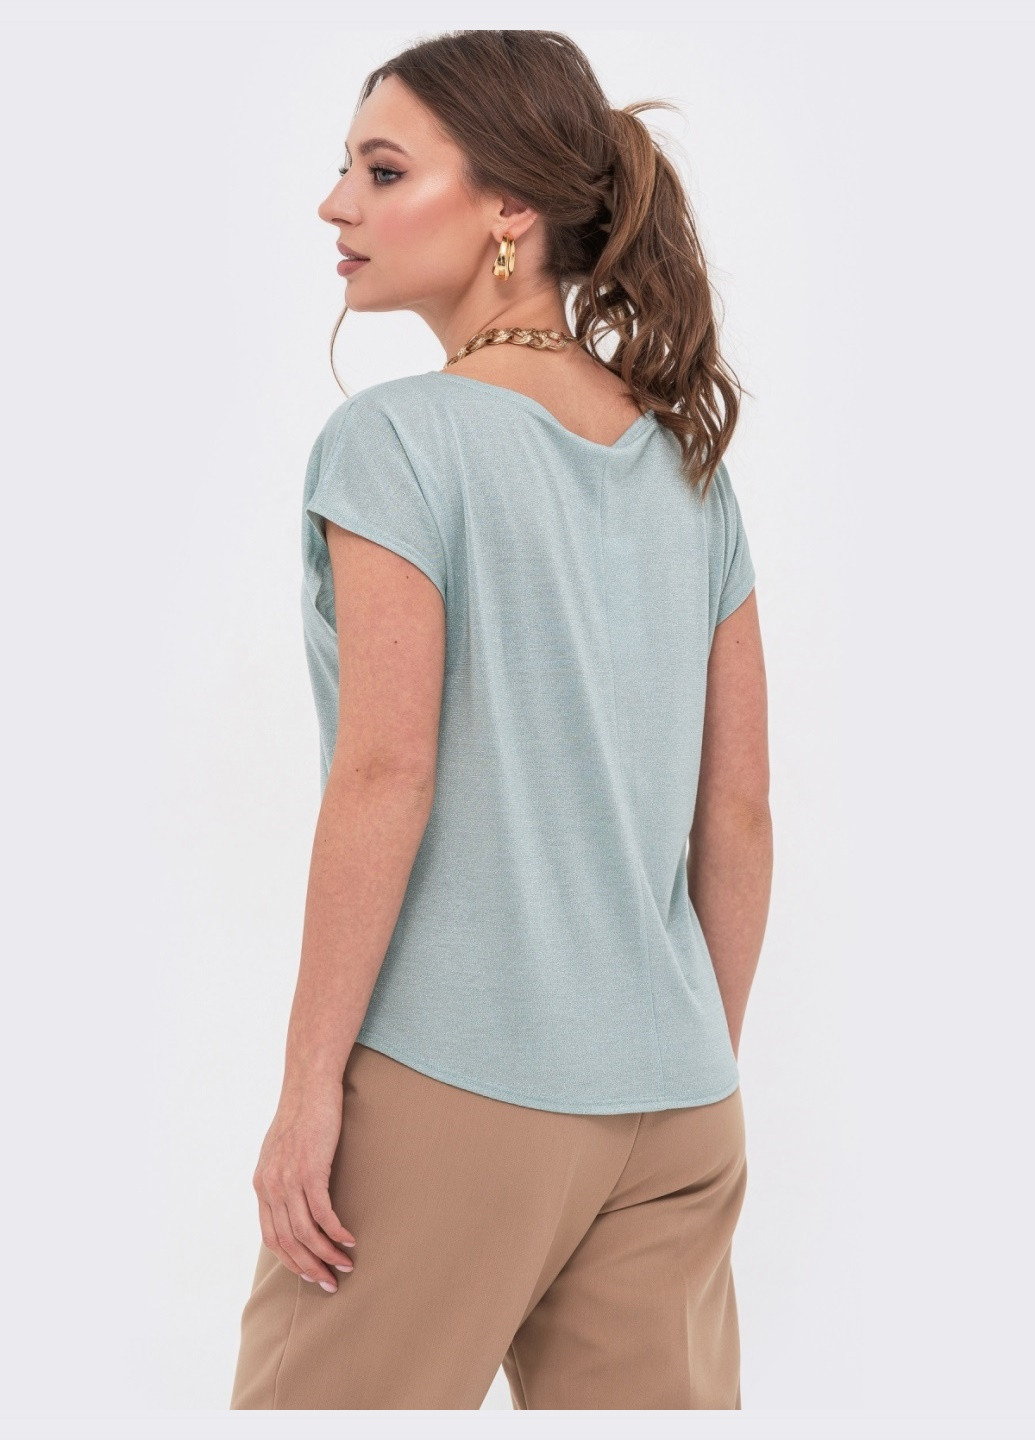 Мятная демисезонная трикотажная блузка мятного цвета с люрексом Dressa